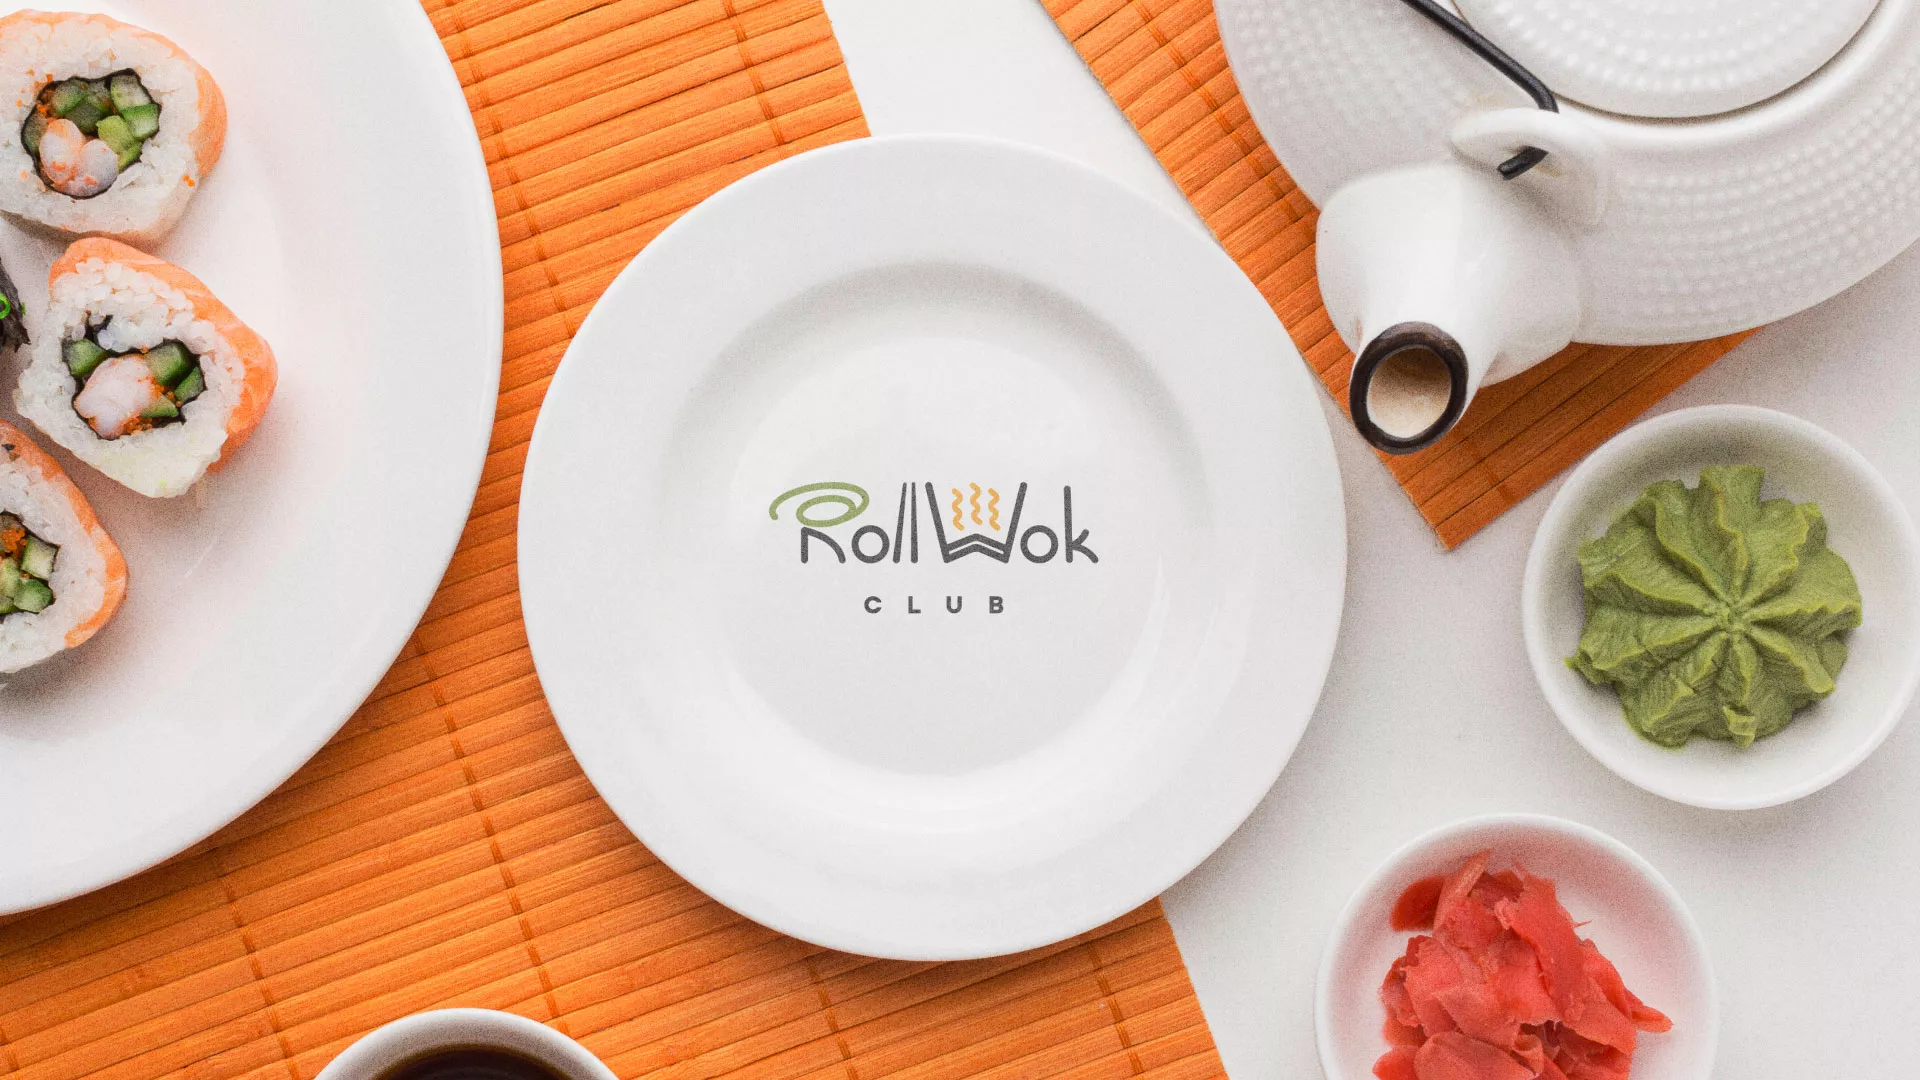 Разработка логотипа и фирменного стиля суши-бара «Roll Wok Club» в Навашино